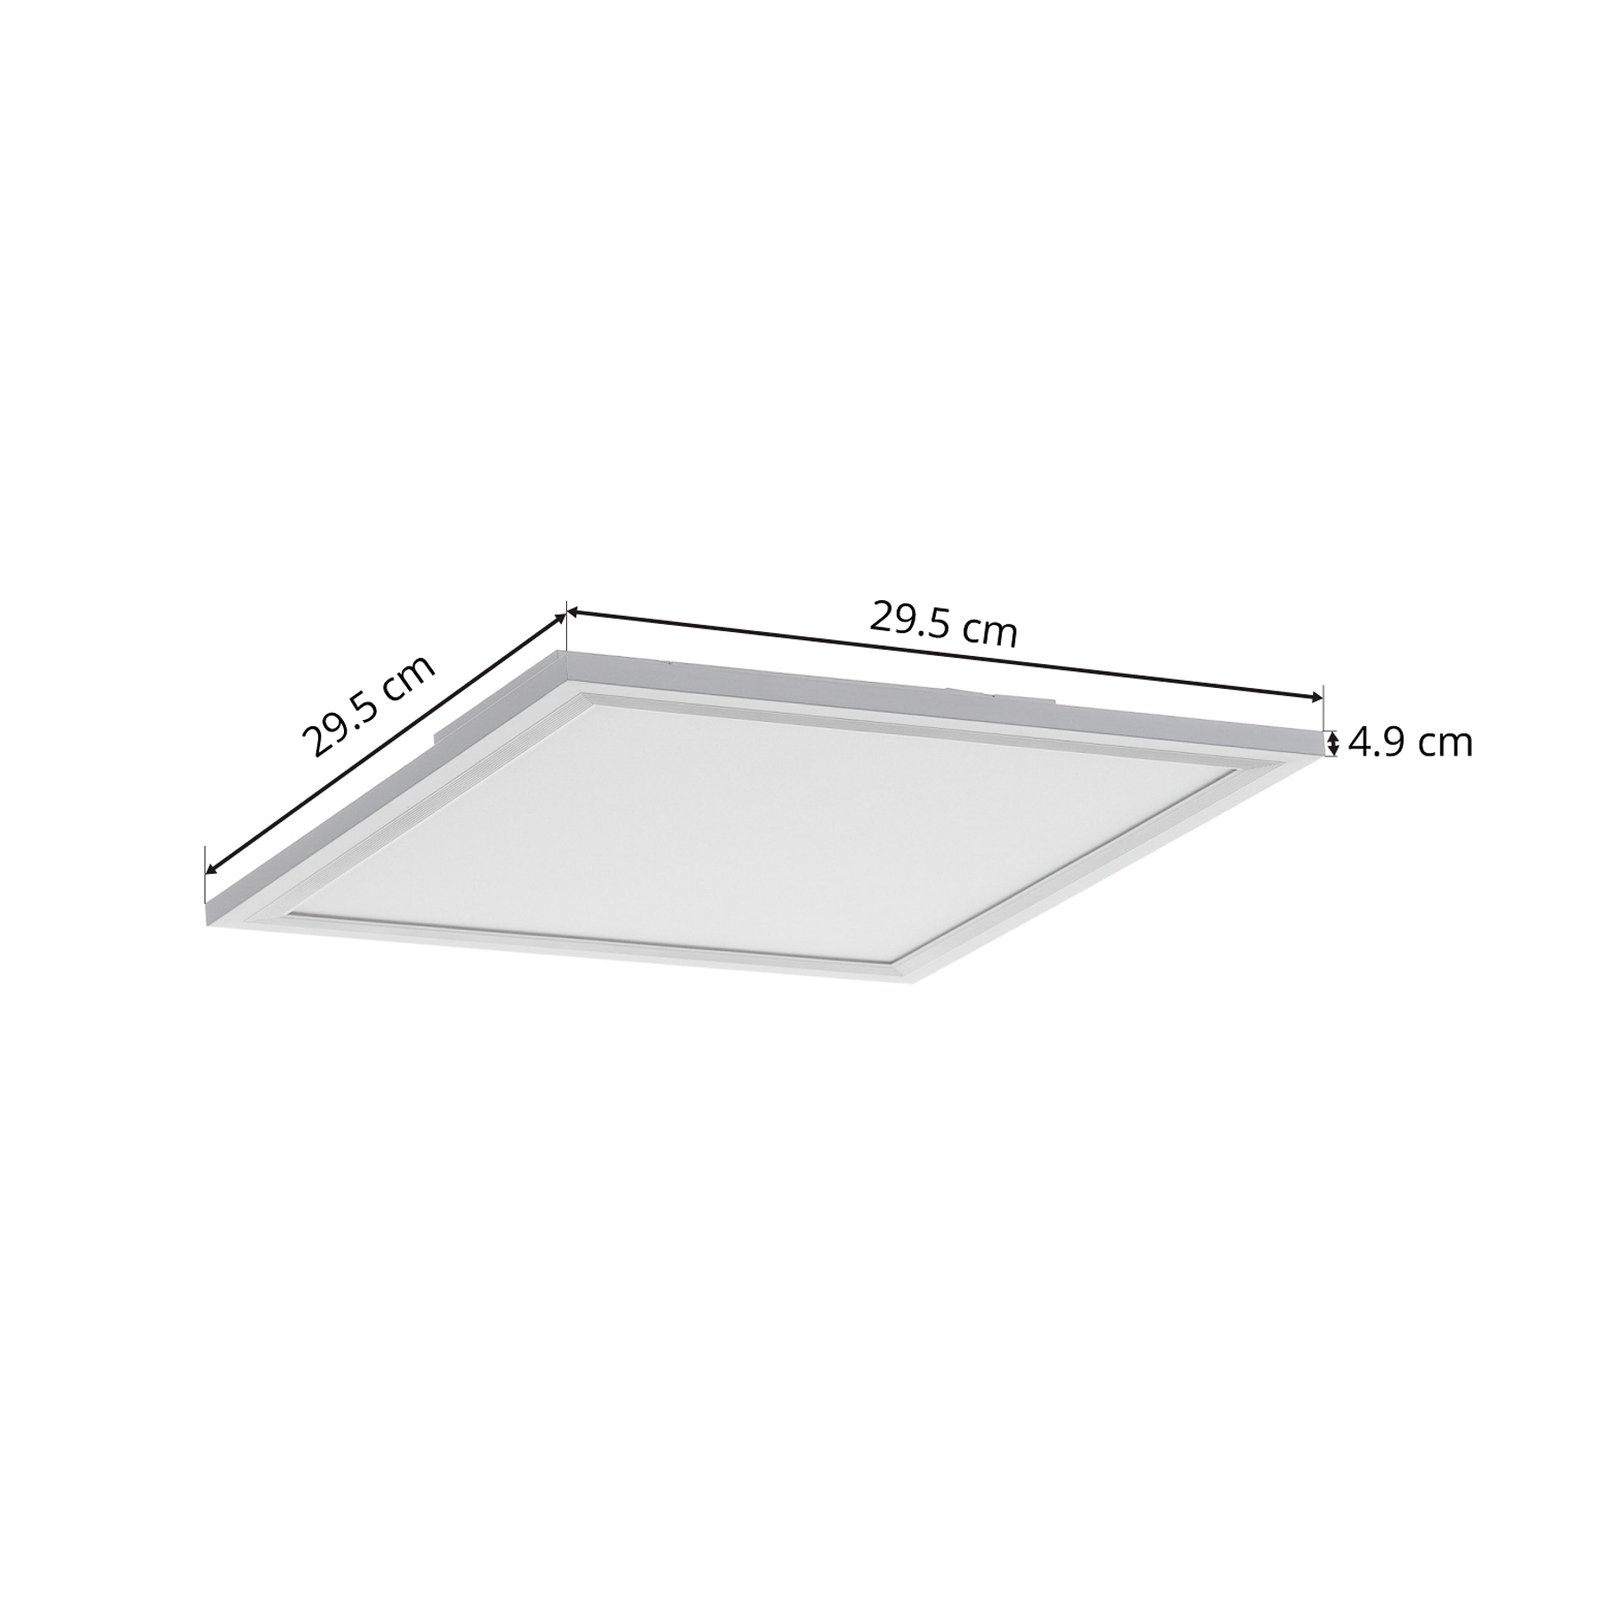 LED-kattovalaisin Piatto, sensori, 29,5 x 29,5 cm